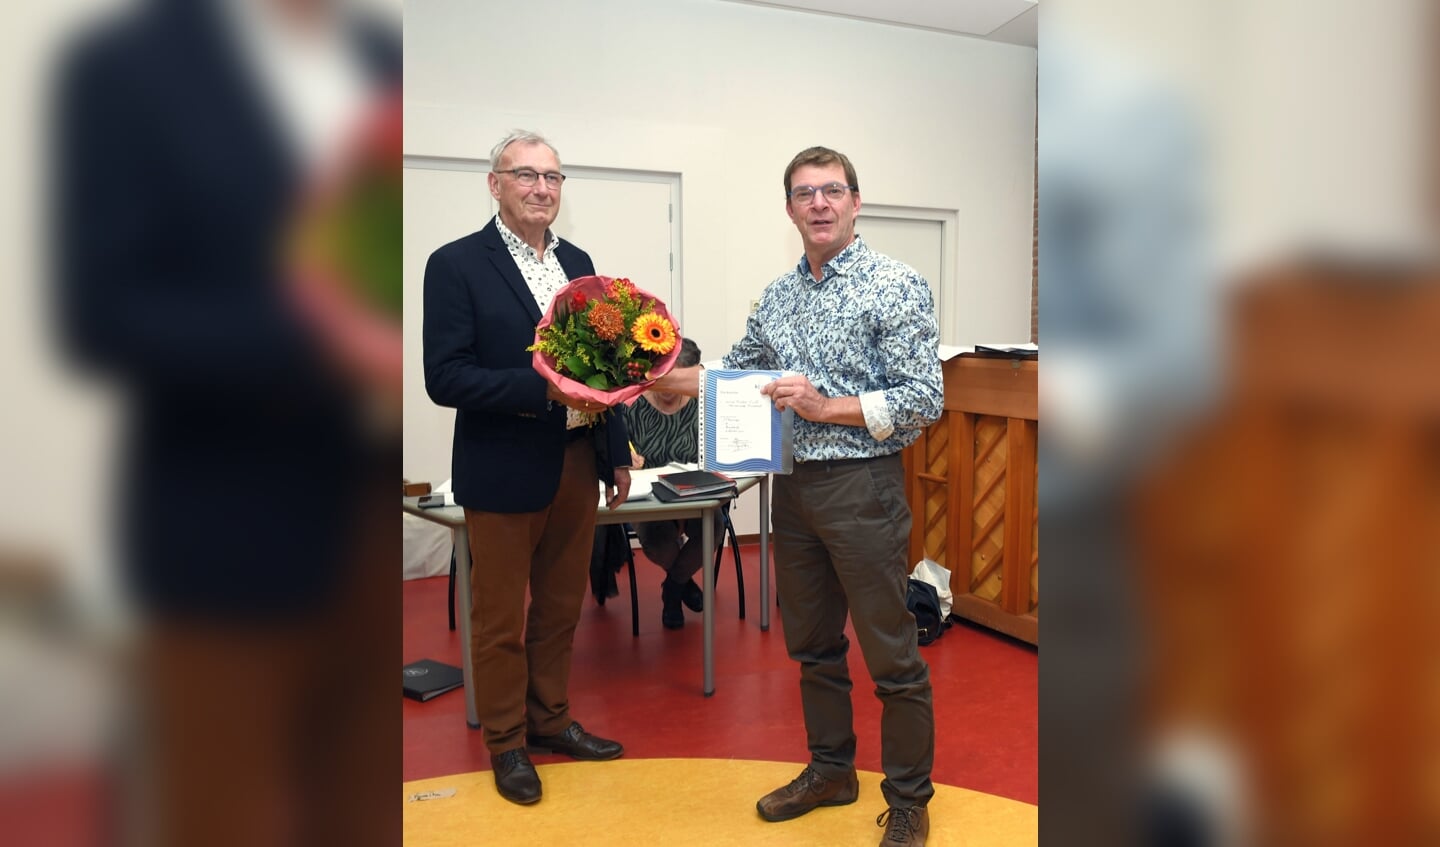 • Donderdag 14 oktober kreeg Hans Korevaar tijdens de jaarvergadering in de Overstap 
een oorkonde en bloemen vanwege zijn 30-jarig lidmaatschap van O en U.
